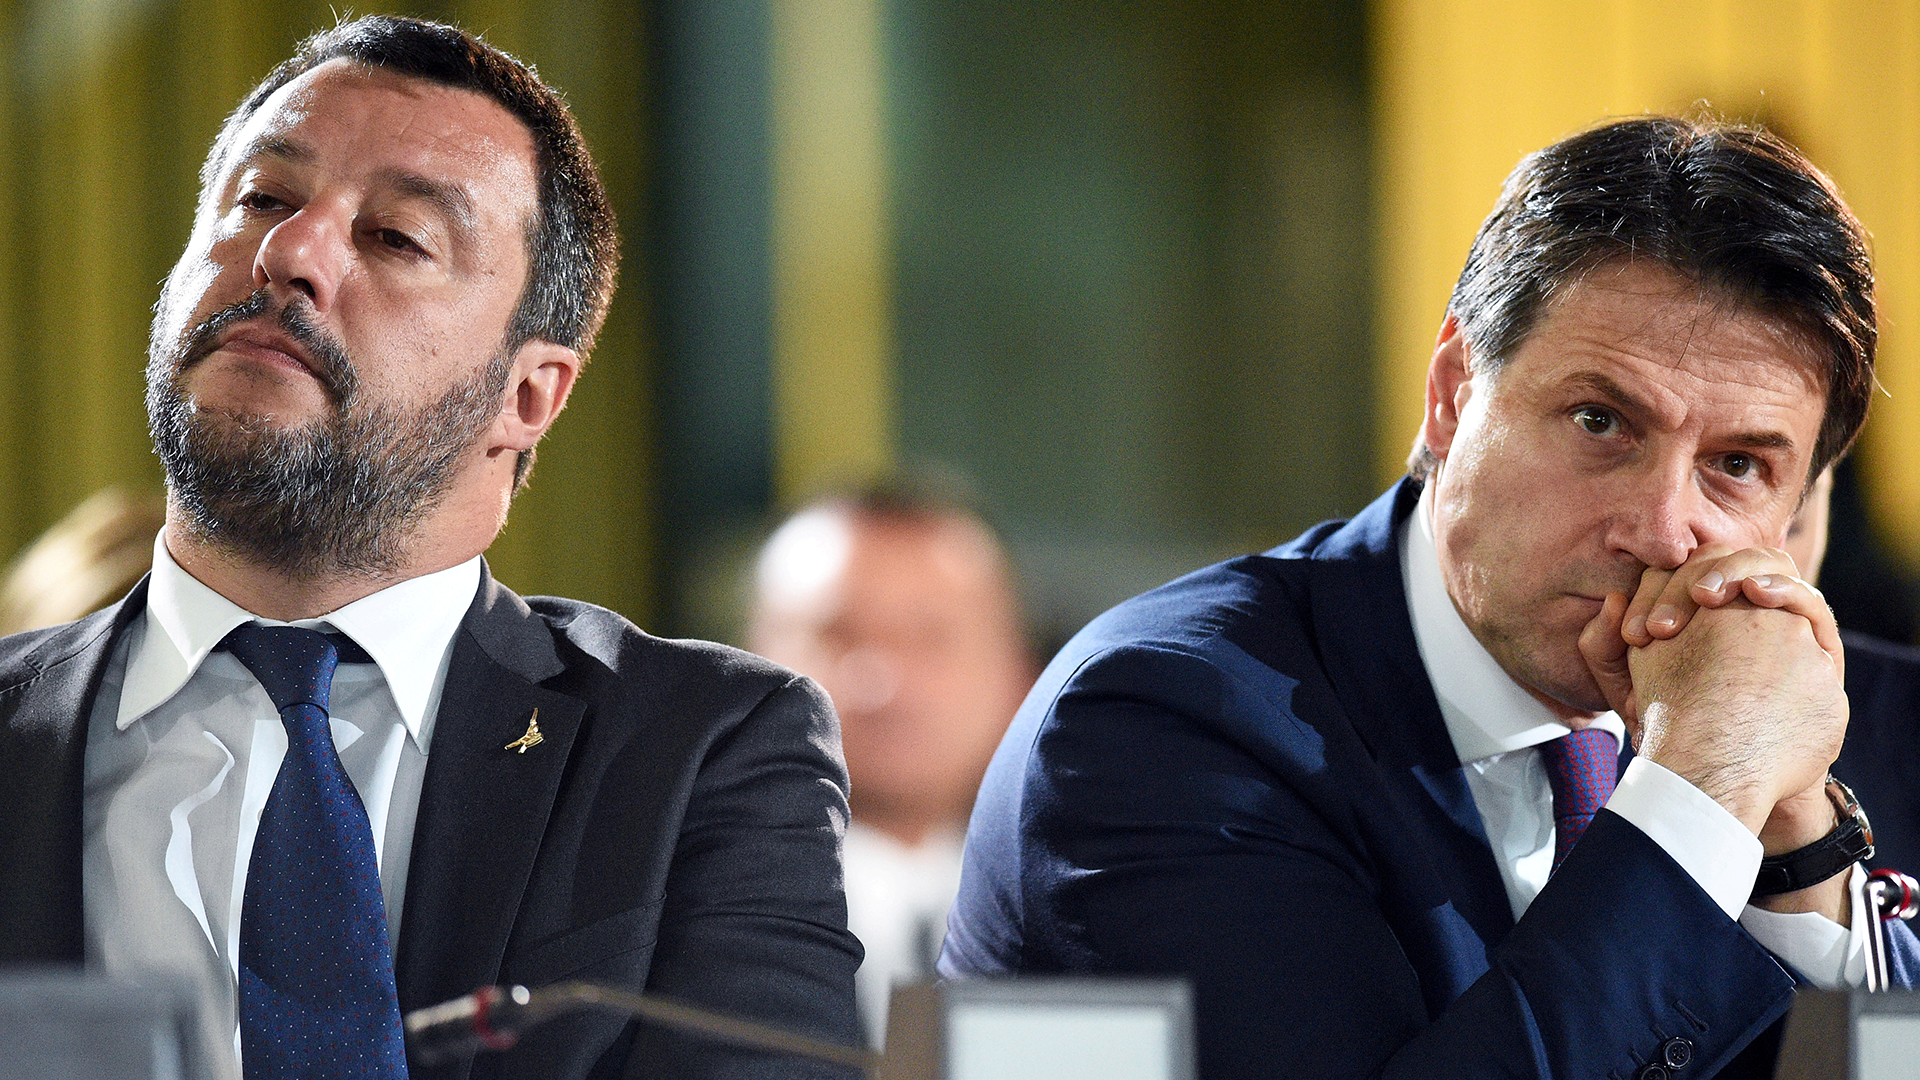 Matteo Salvini und Giuseppe Conte